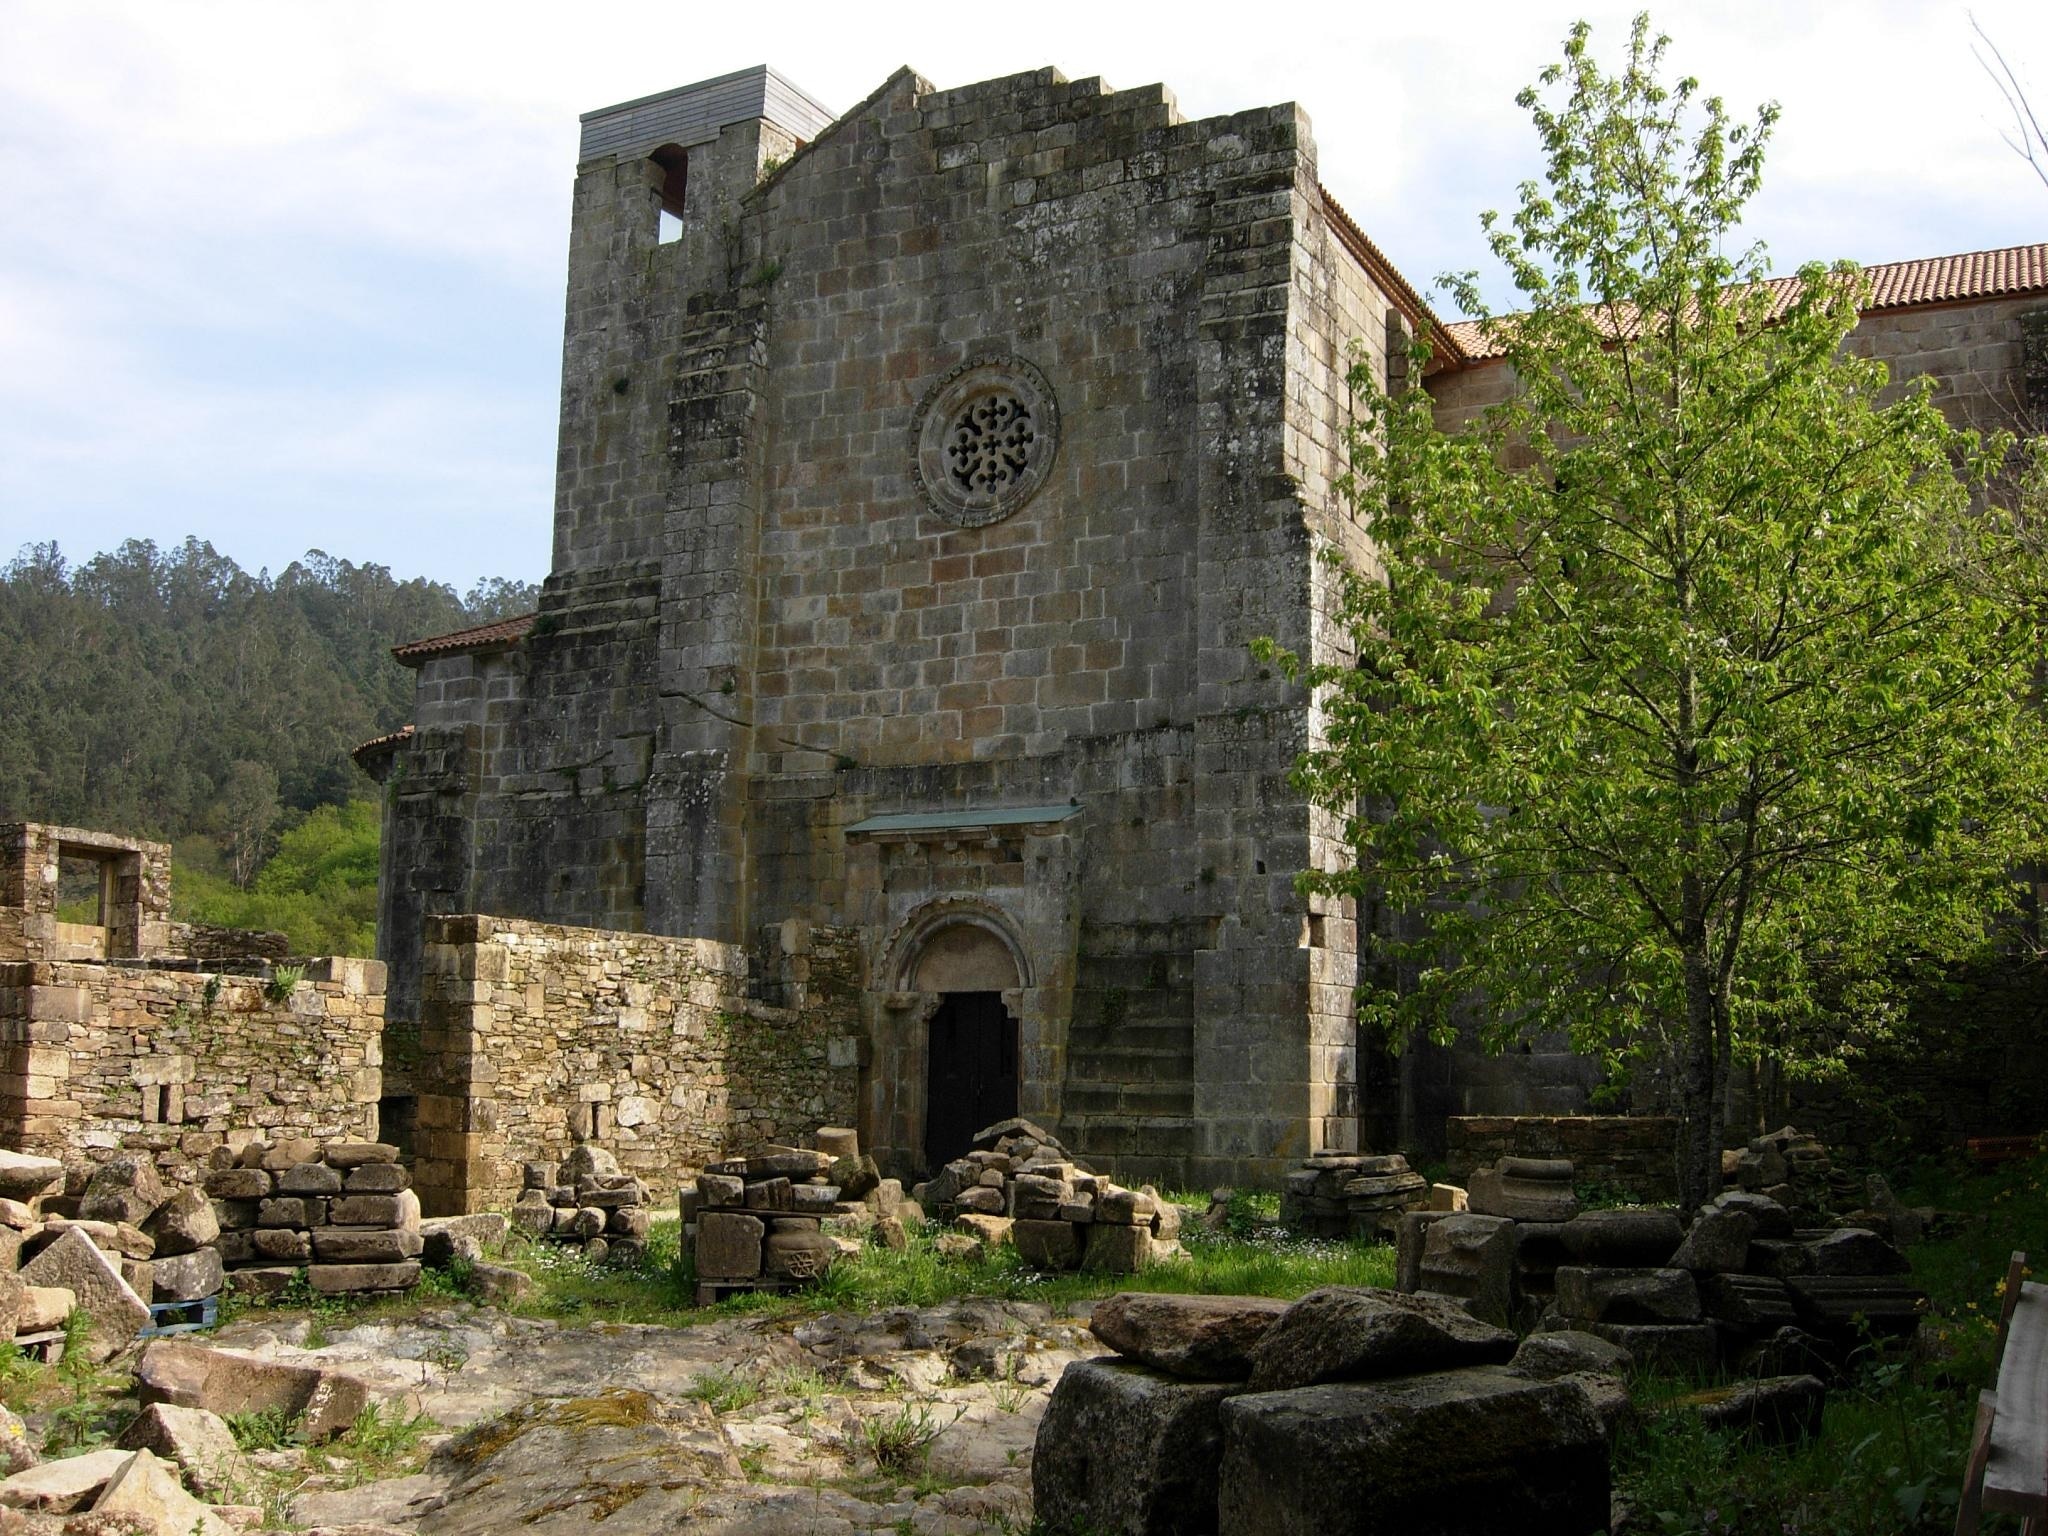 Hastial septentrional de la iglesia y sillares depositados en el patio del monasterio.